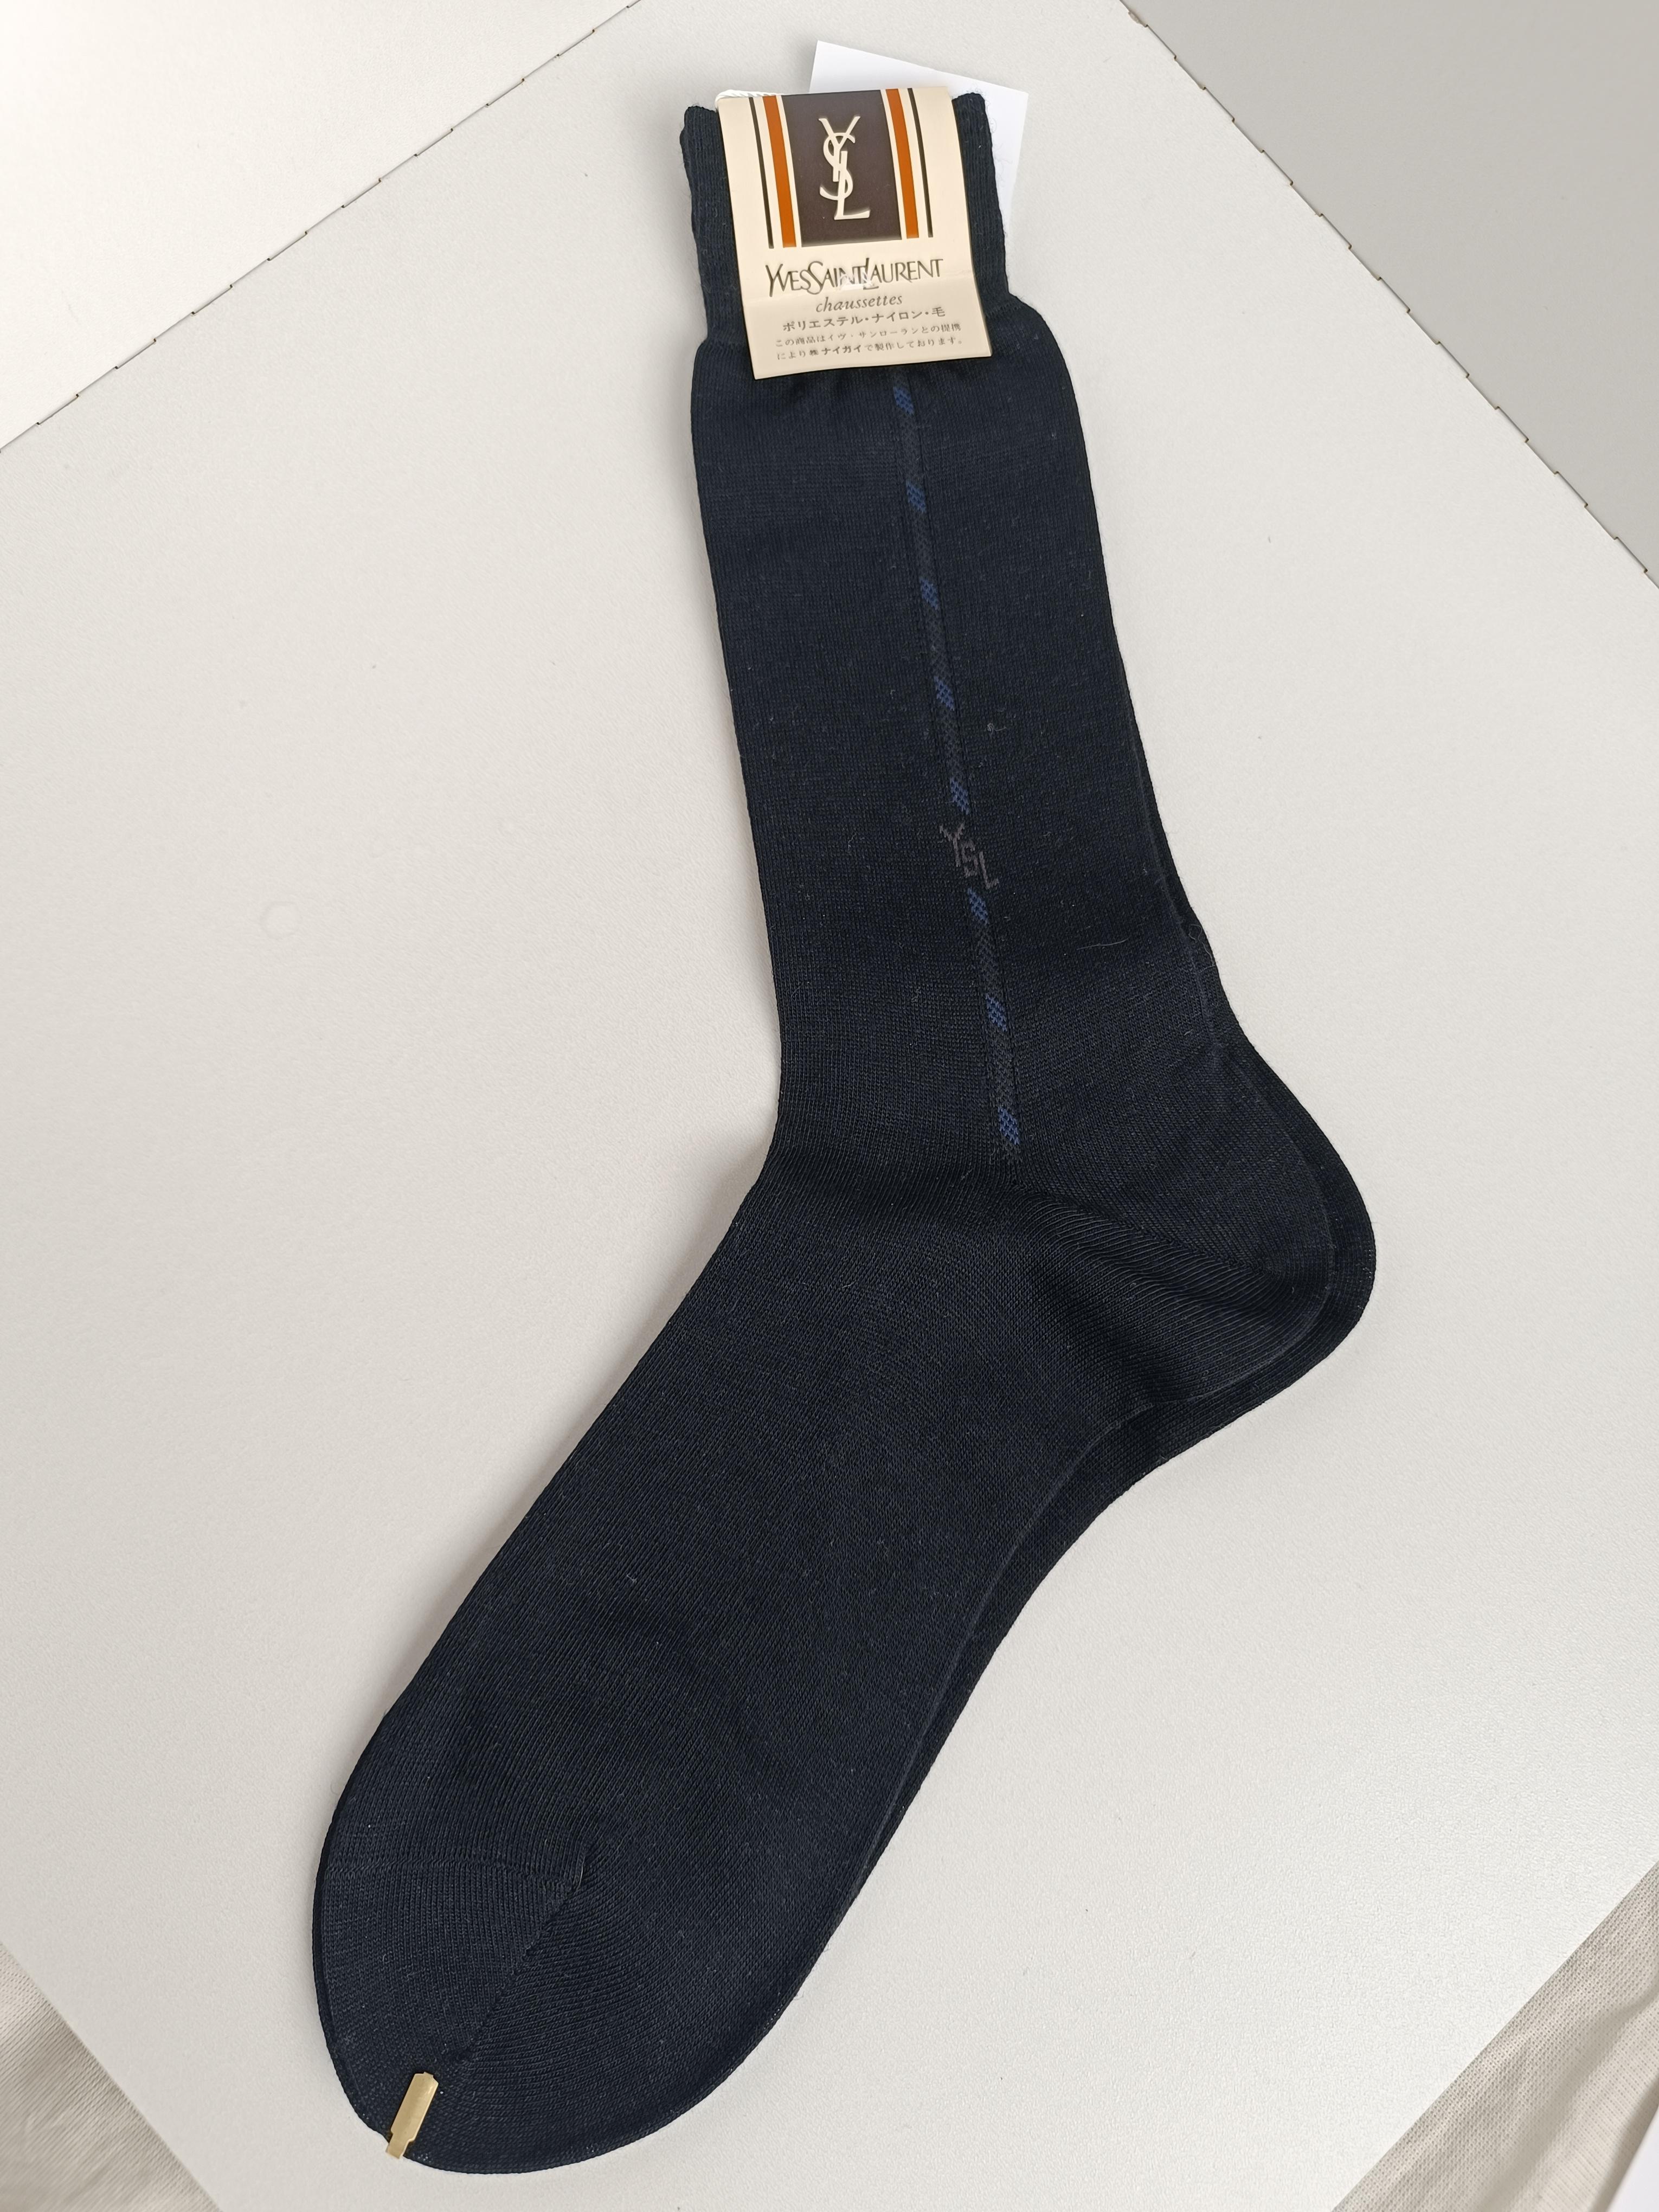 Authentische Yves Saint Laurent Vintage Herren Socken
Land der Herstellung: Japan
Farbe: Schwarz
Unisex.
Es ist toll zum Tragen oder Verschenken!
Wir bemühen uns, eine hohe Qualitätskontrolle zu gewährleisten, und größere Mängel werden auf den Fotos